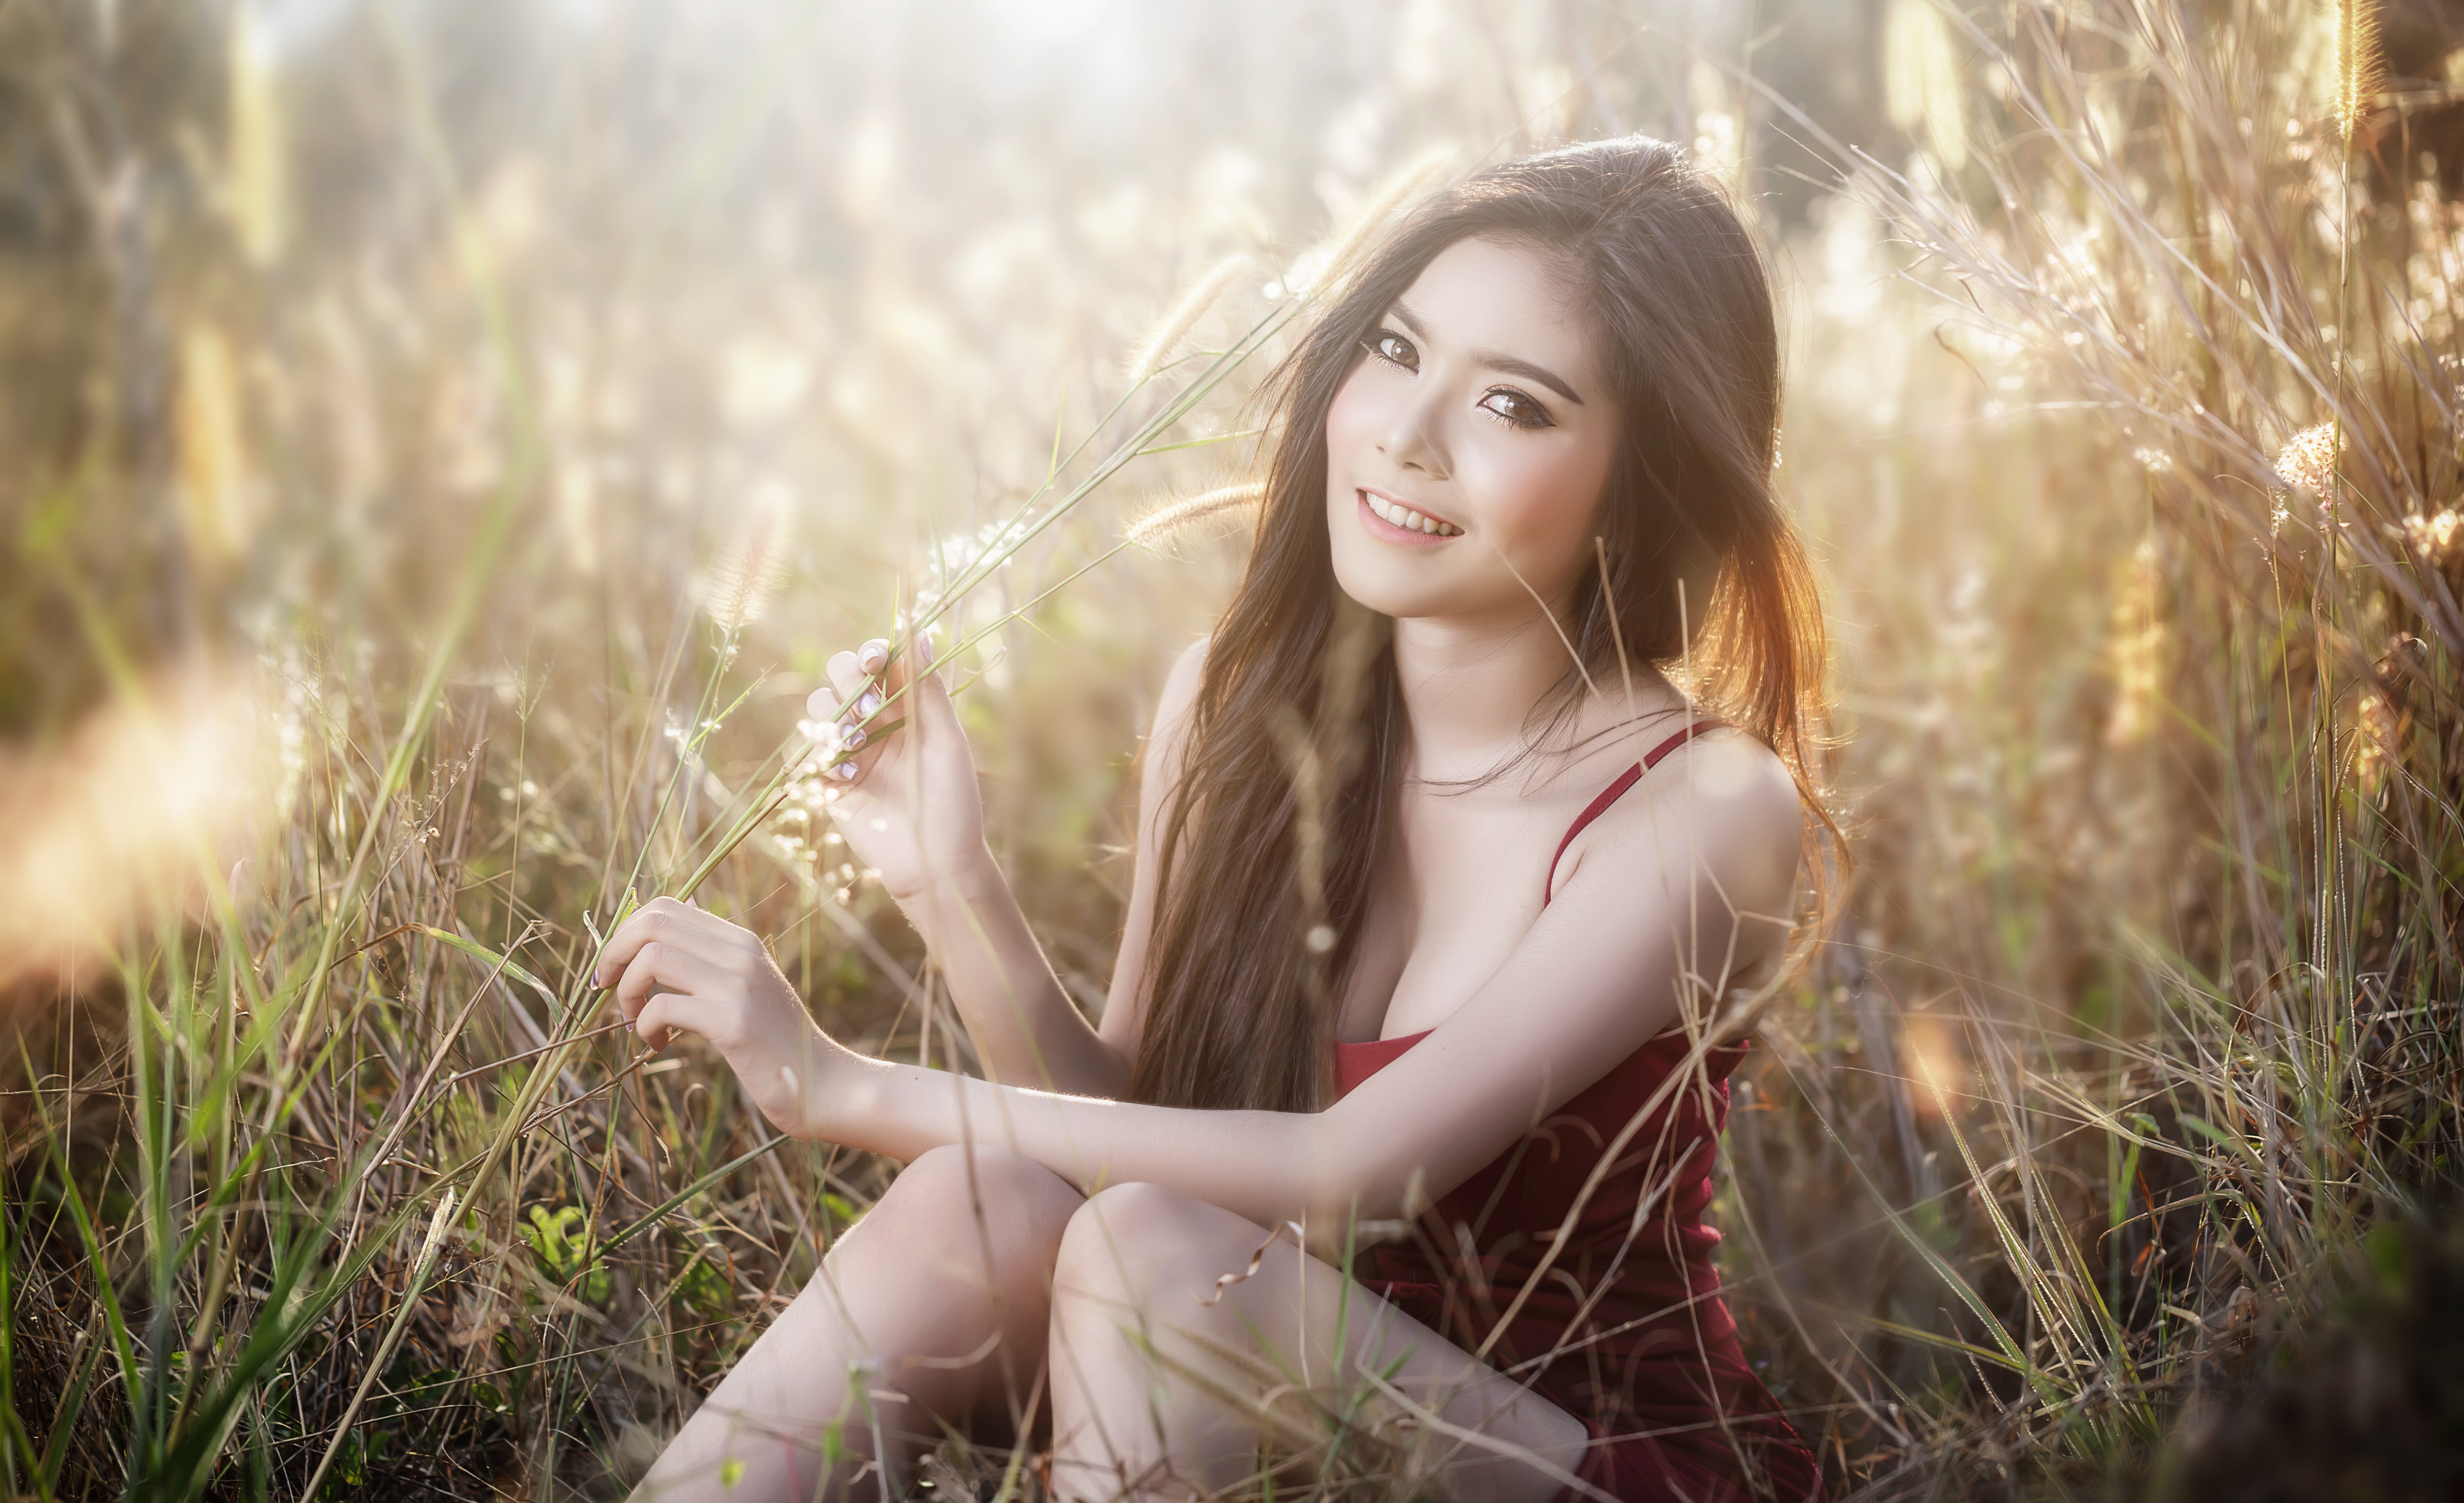 People 5746x3505 Asian model women long hair brunette depth of field sitting field shirt straw smiling